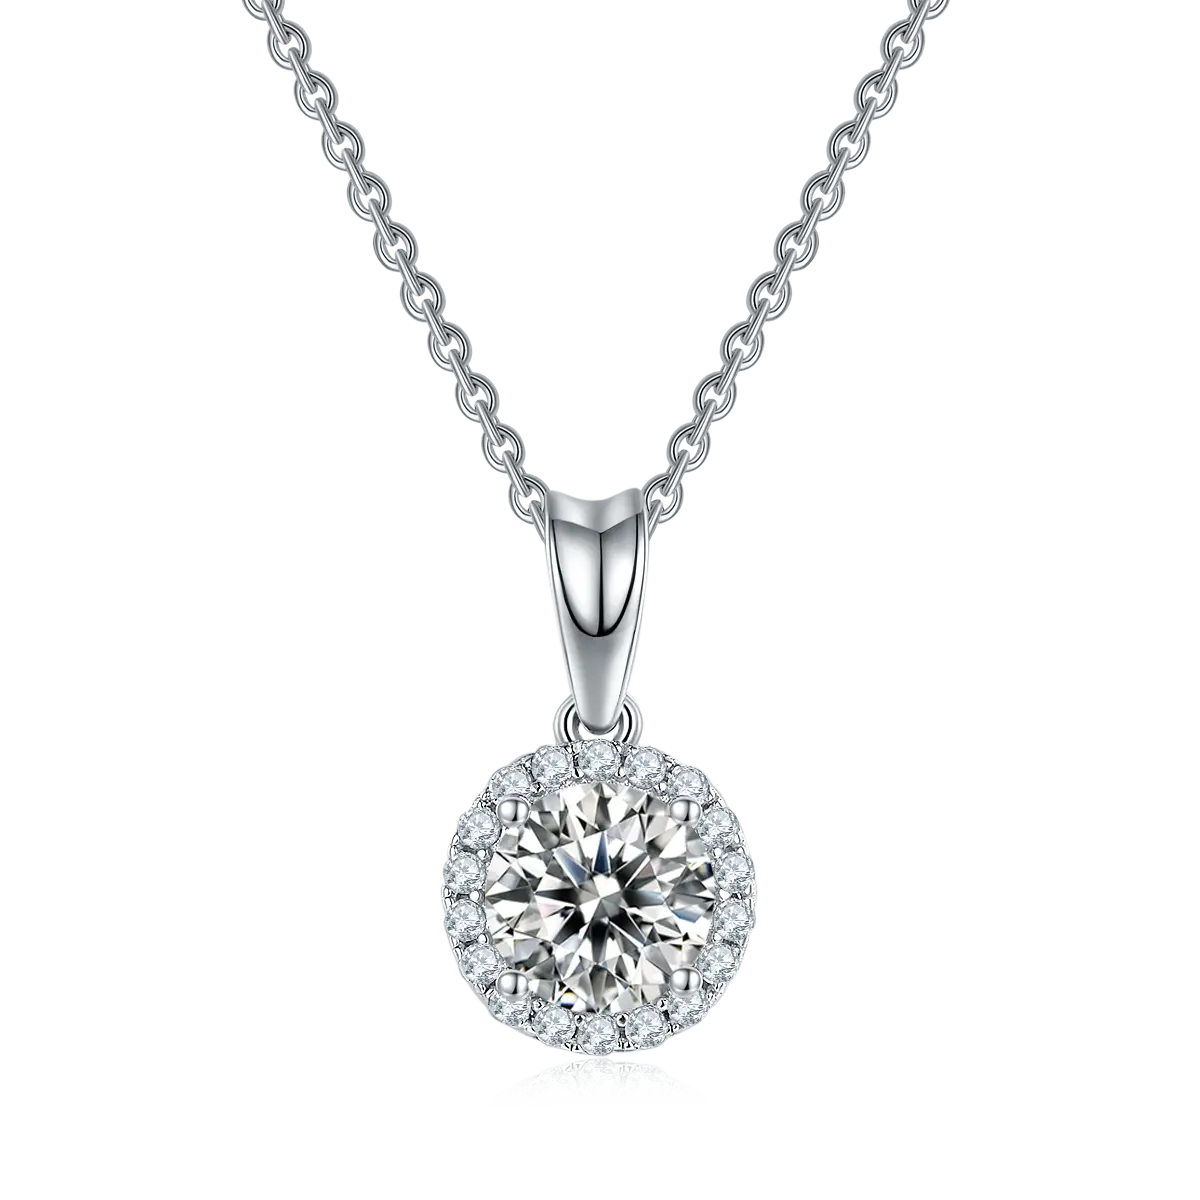 Hanyu Set perhiasan kalung liontin berlian Moissanite perak murni 925 desain klasik untuk wanita